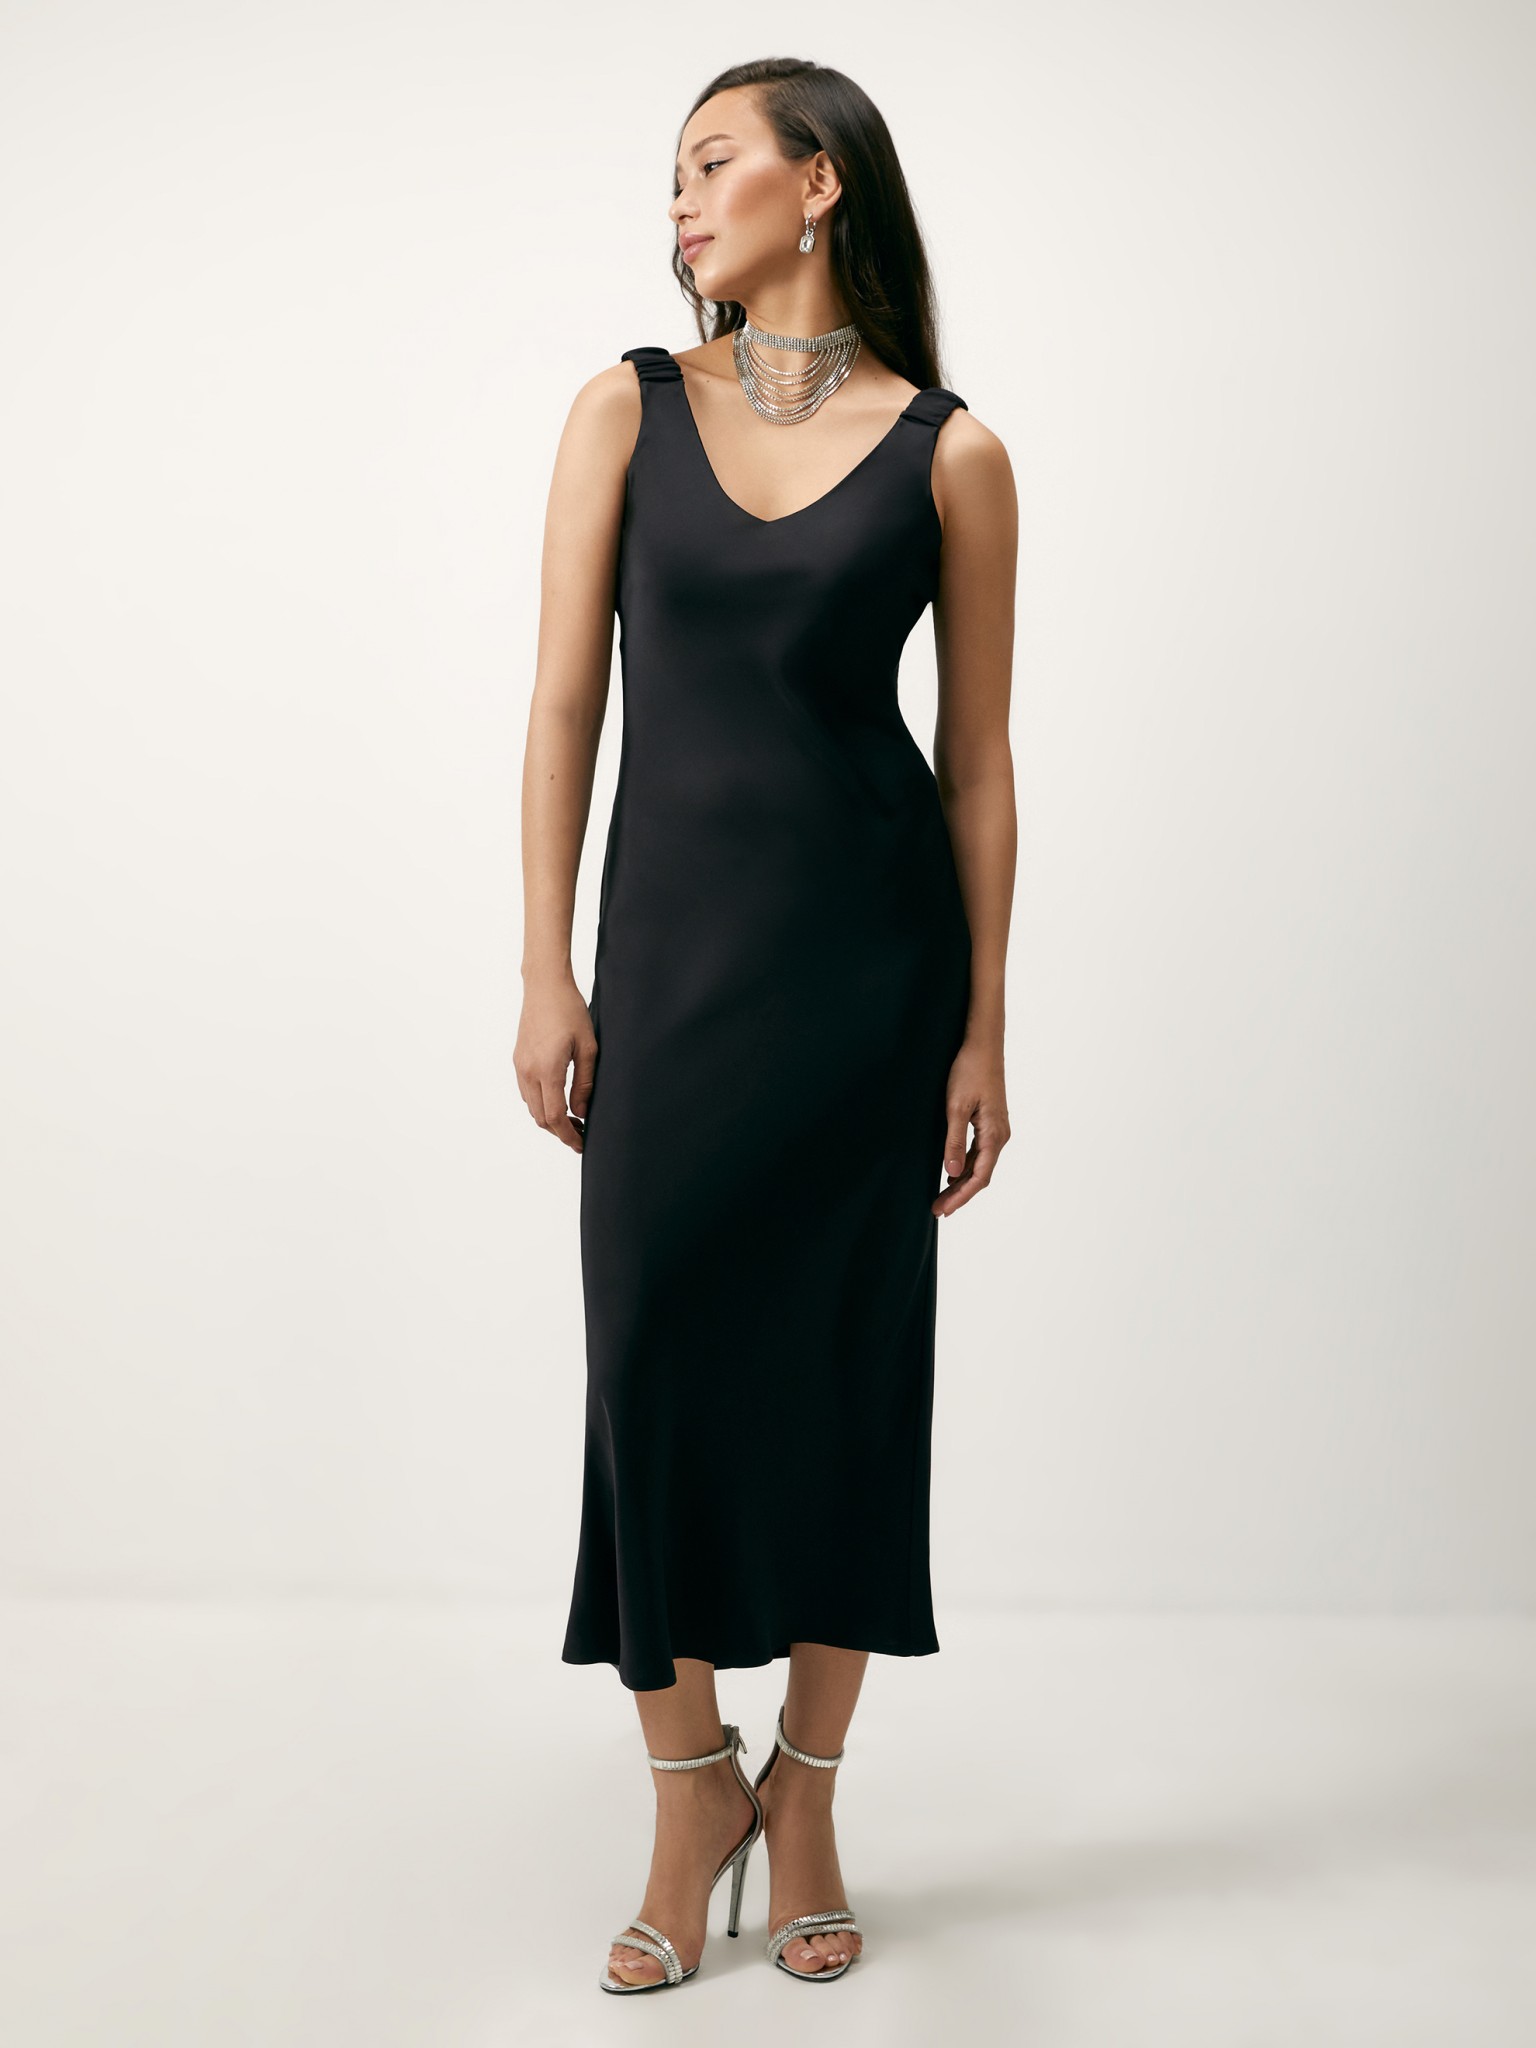 Платье женское Concept Club 10200200968 черное XL